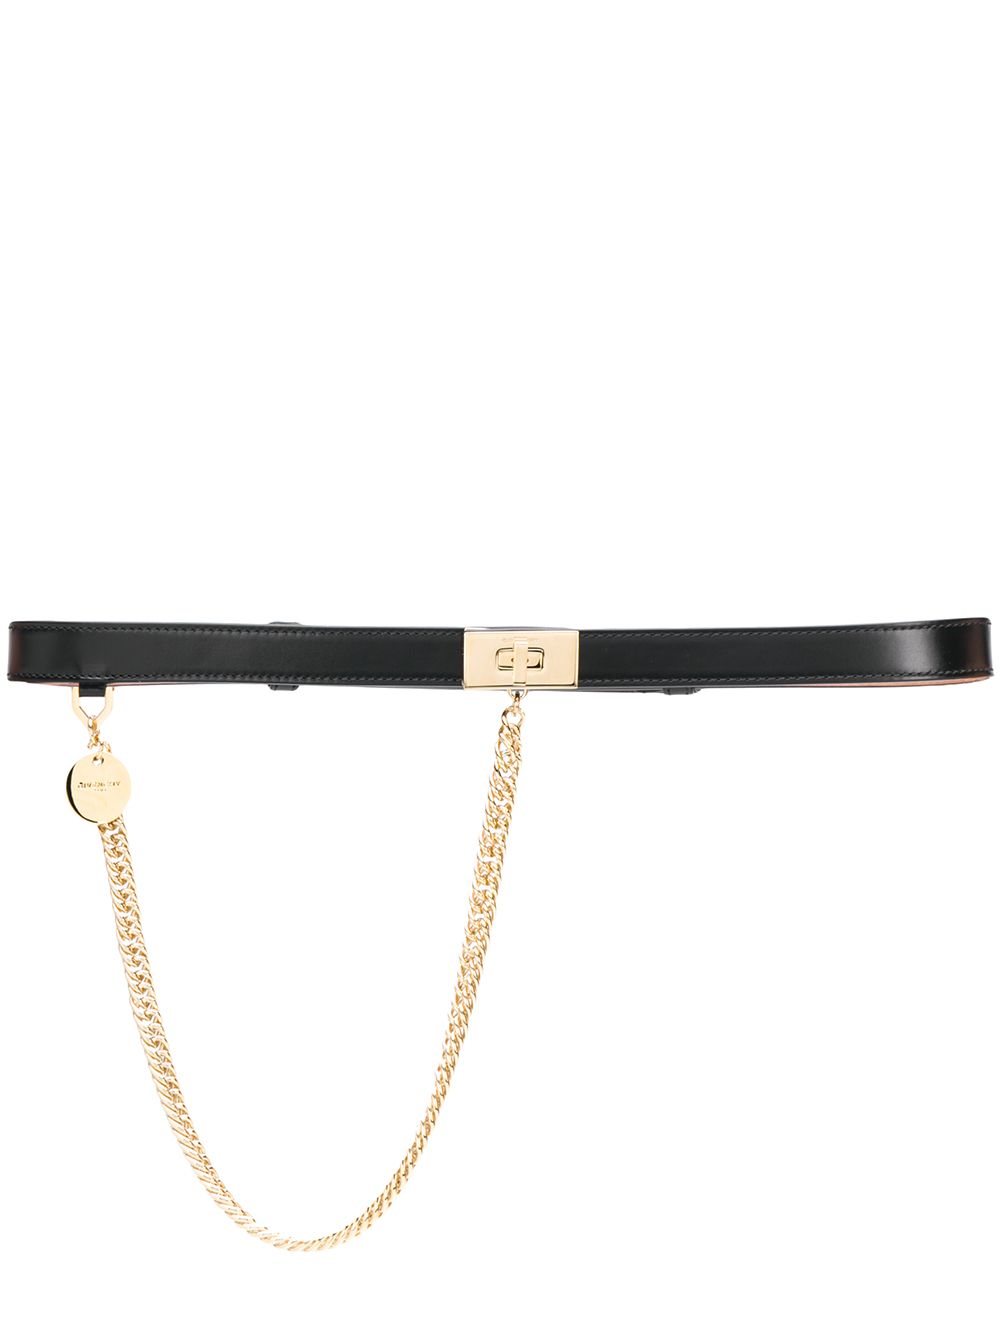 фото Givenchy ремень с цепочным декором